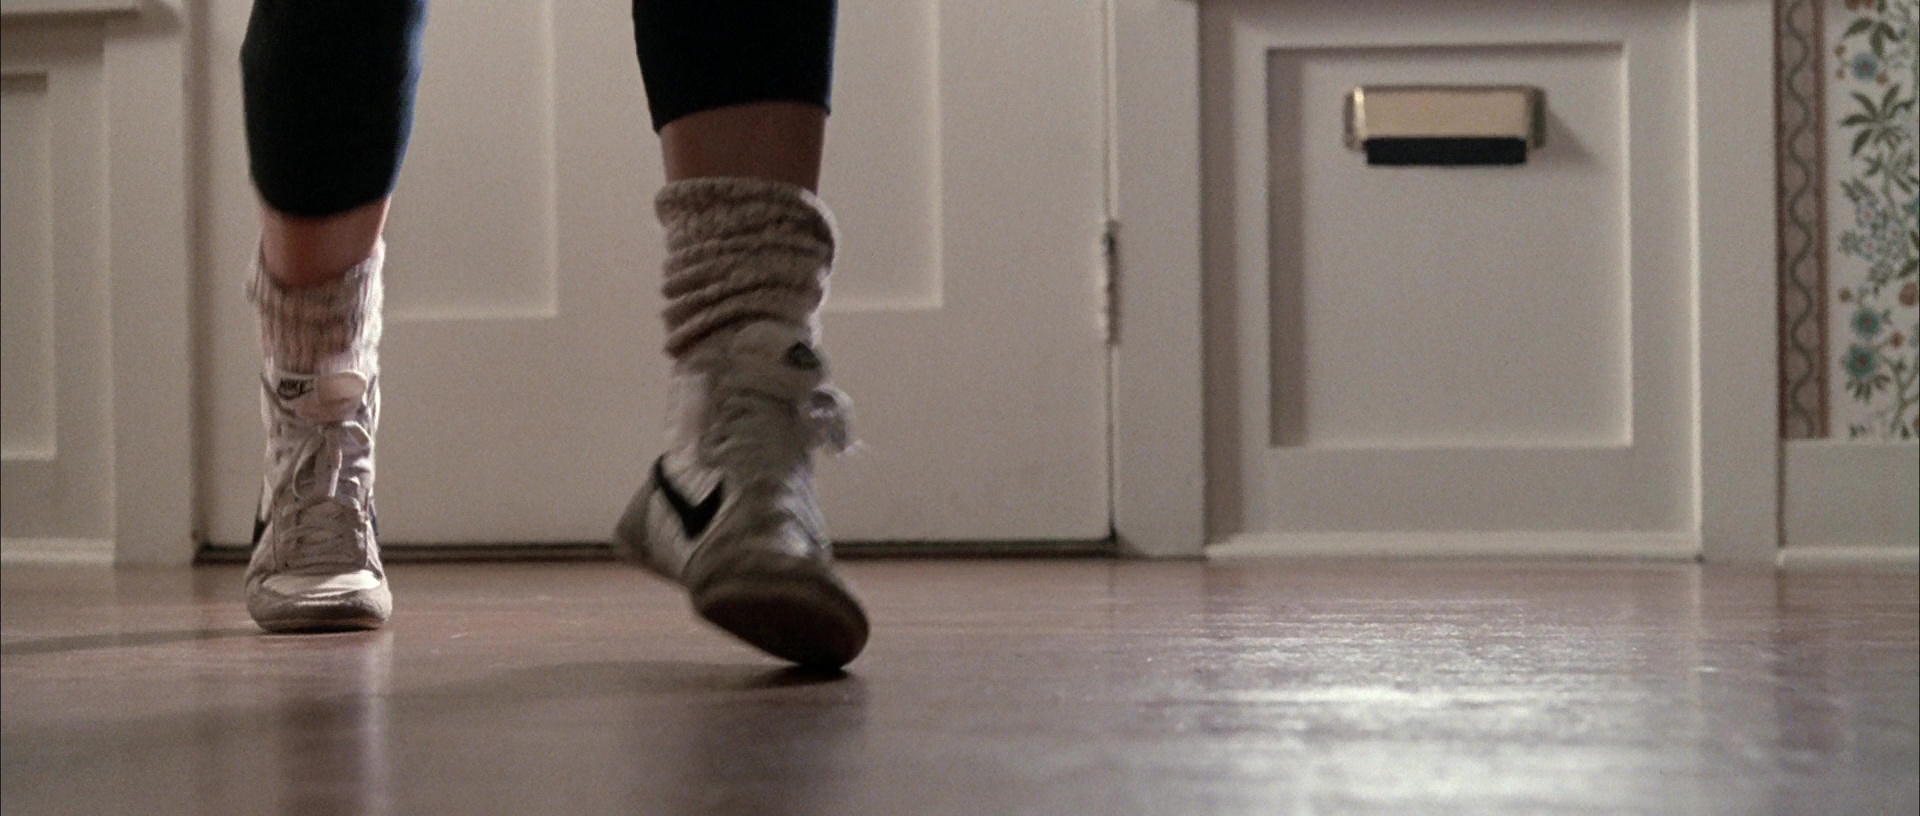 Nike Sneakers Worn by Jennifer Grey in Ferris Bueller’s Day Off (1986) Movie1920 x 816